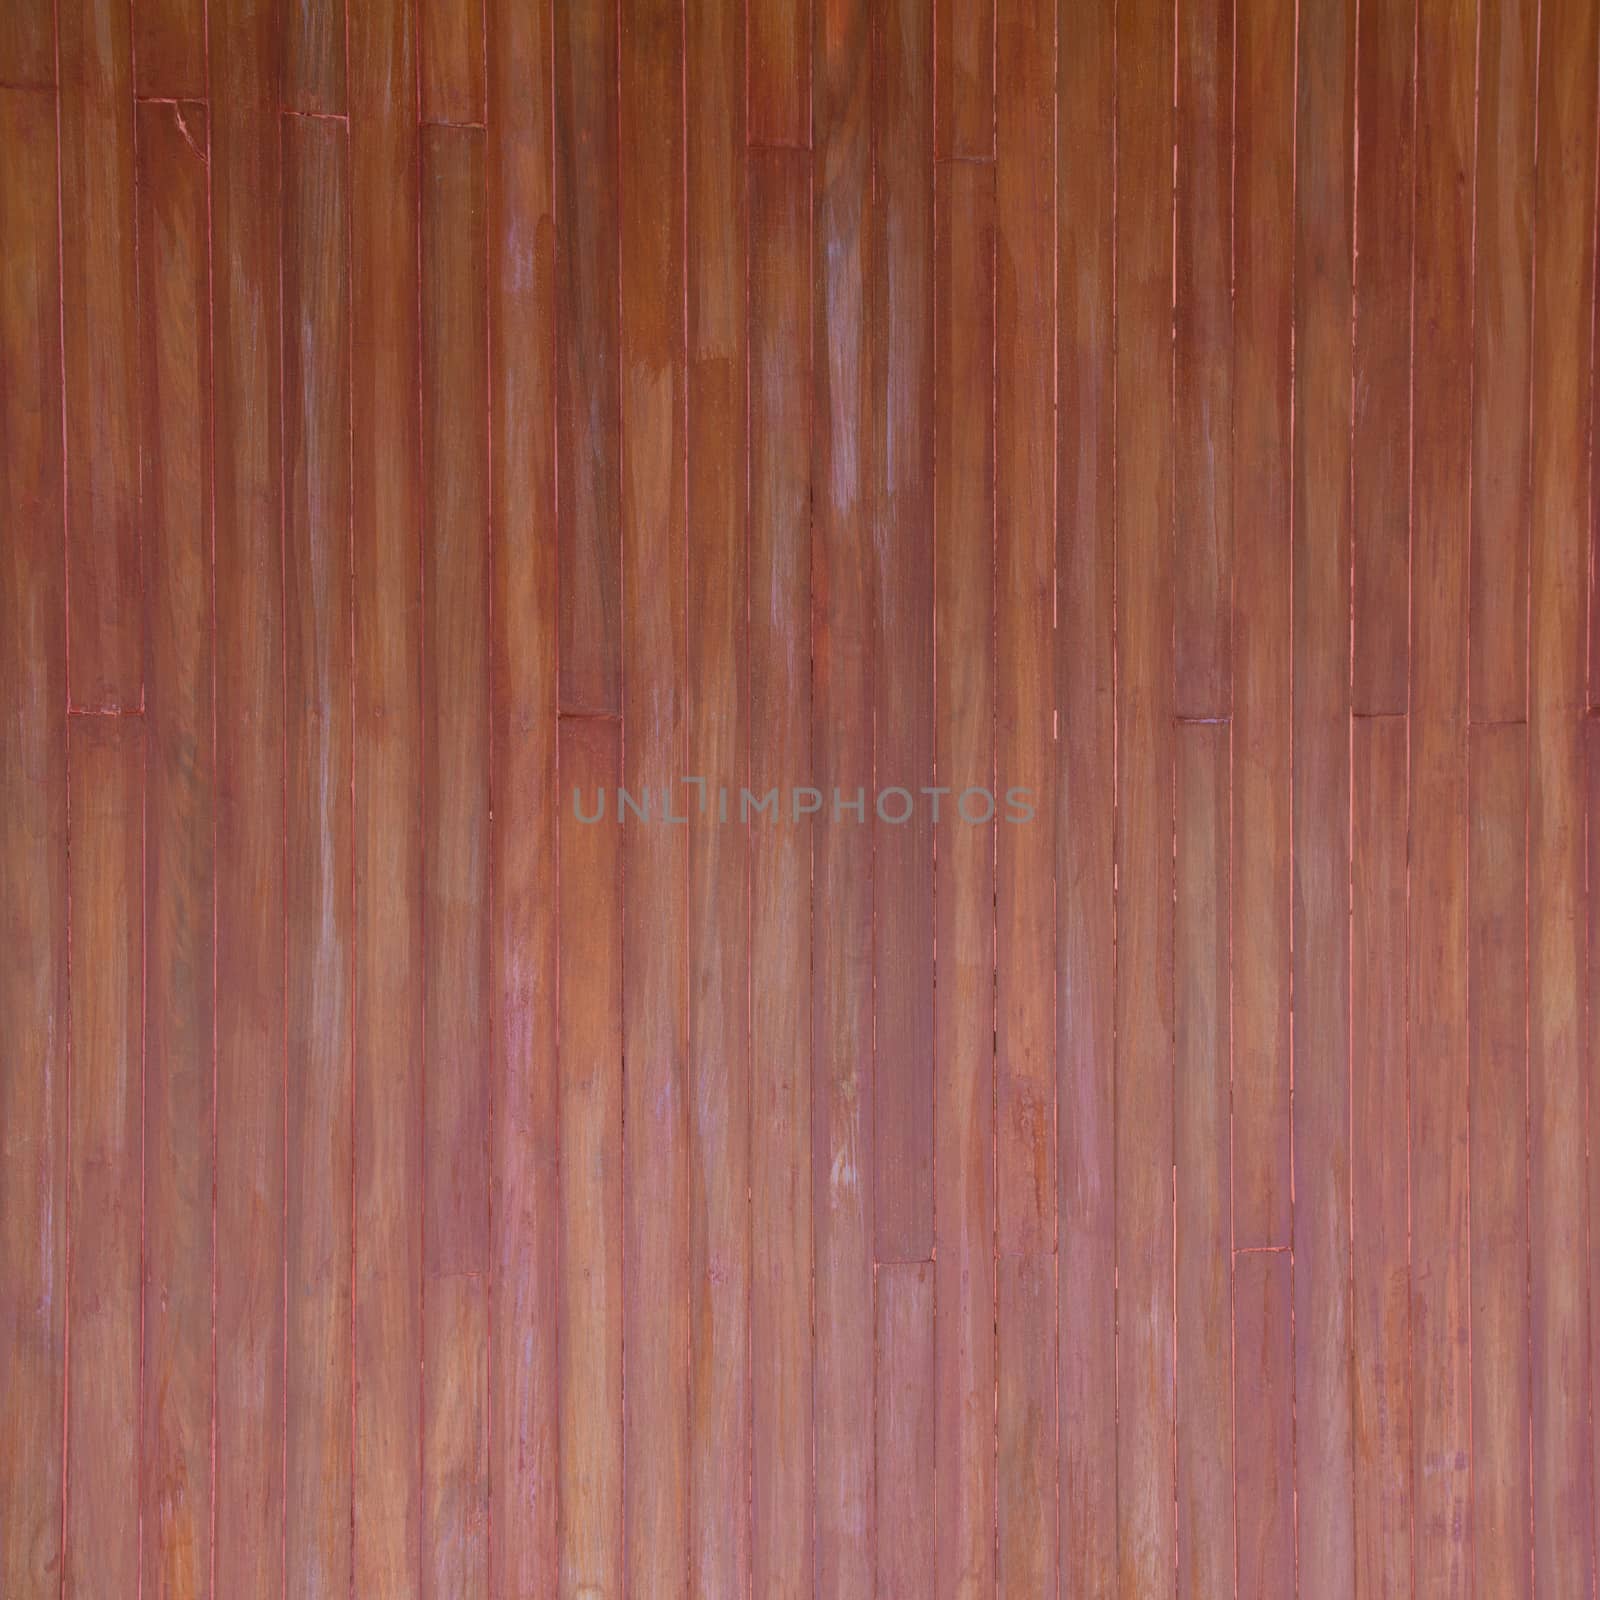 Grunge Wood panels  by wyoosumran